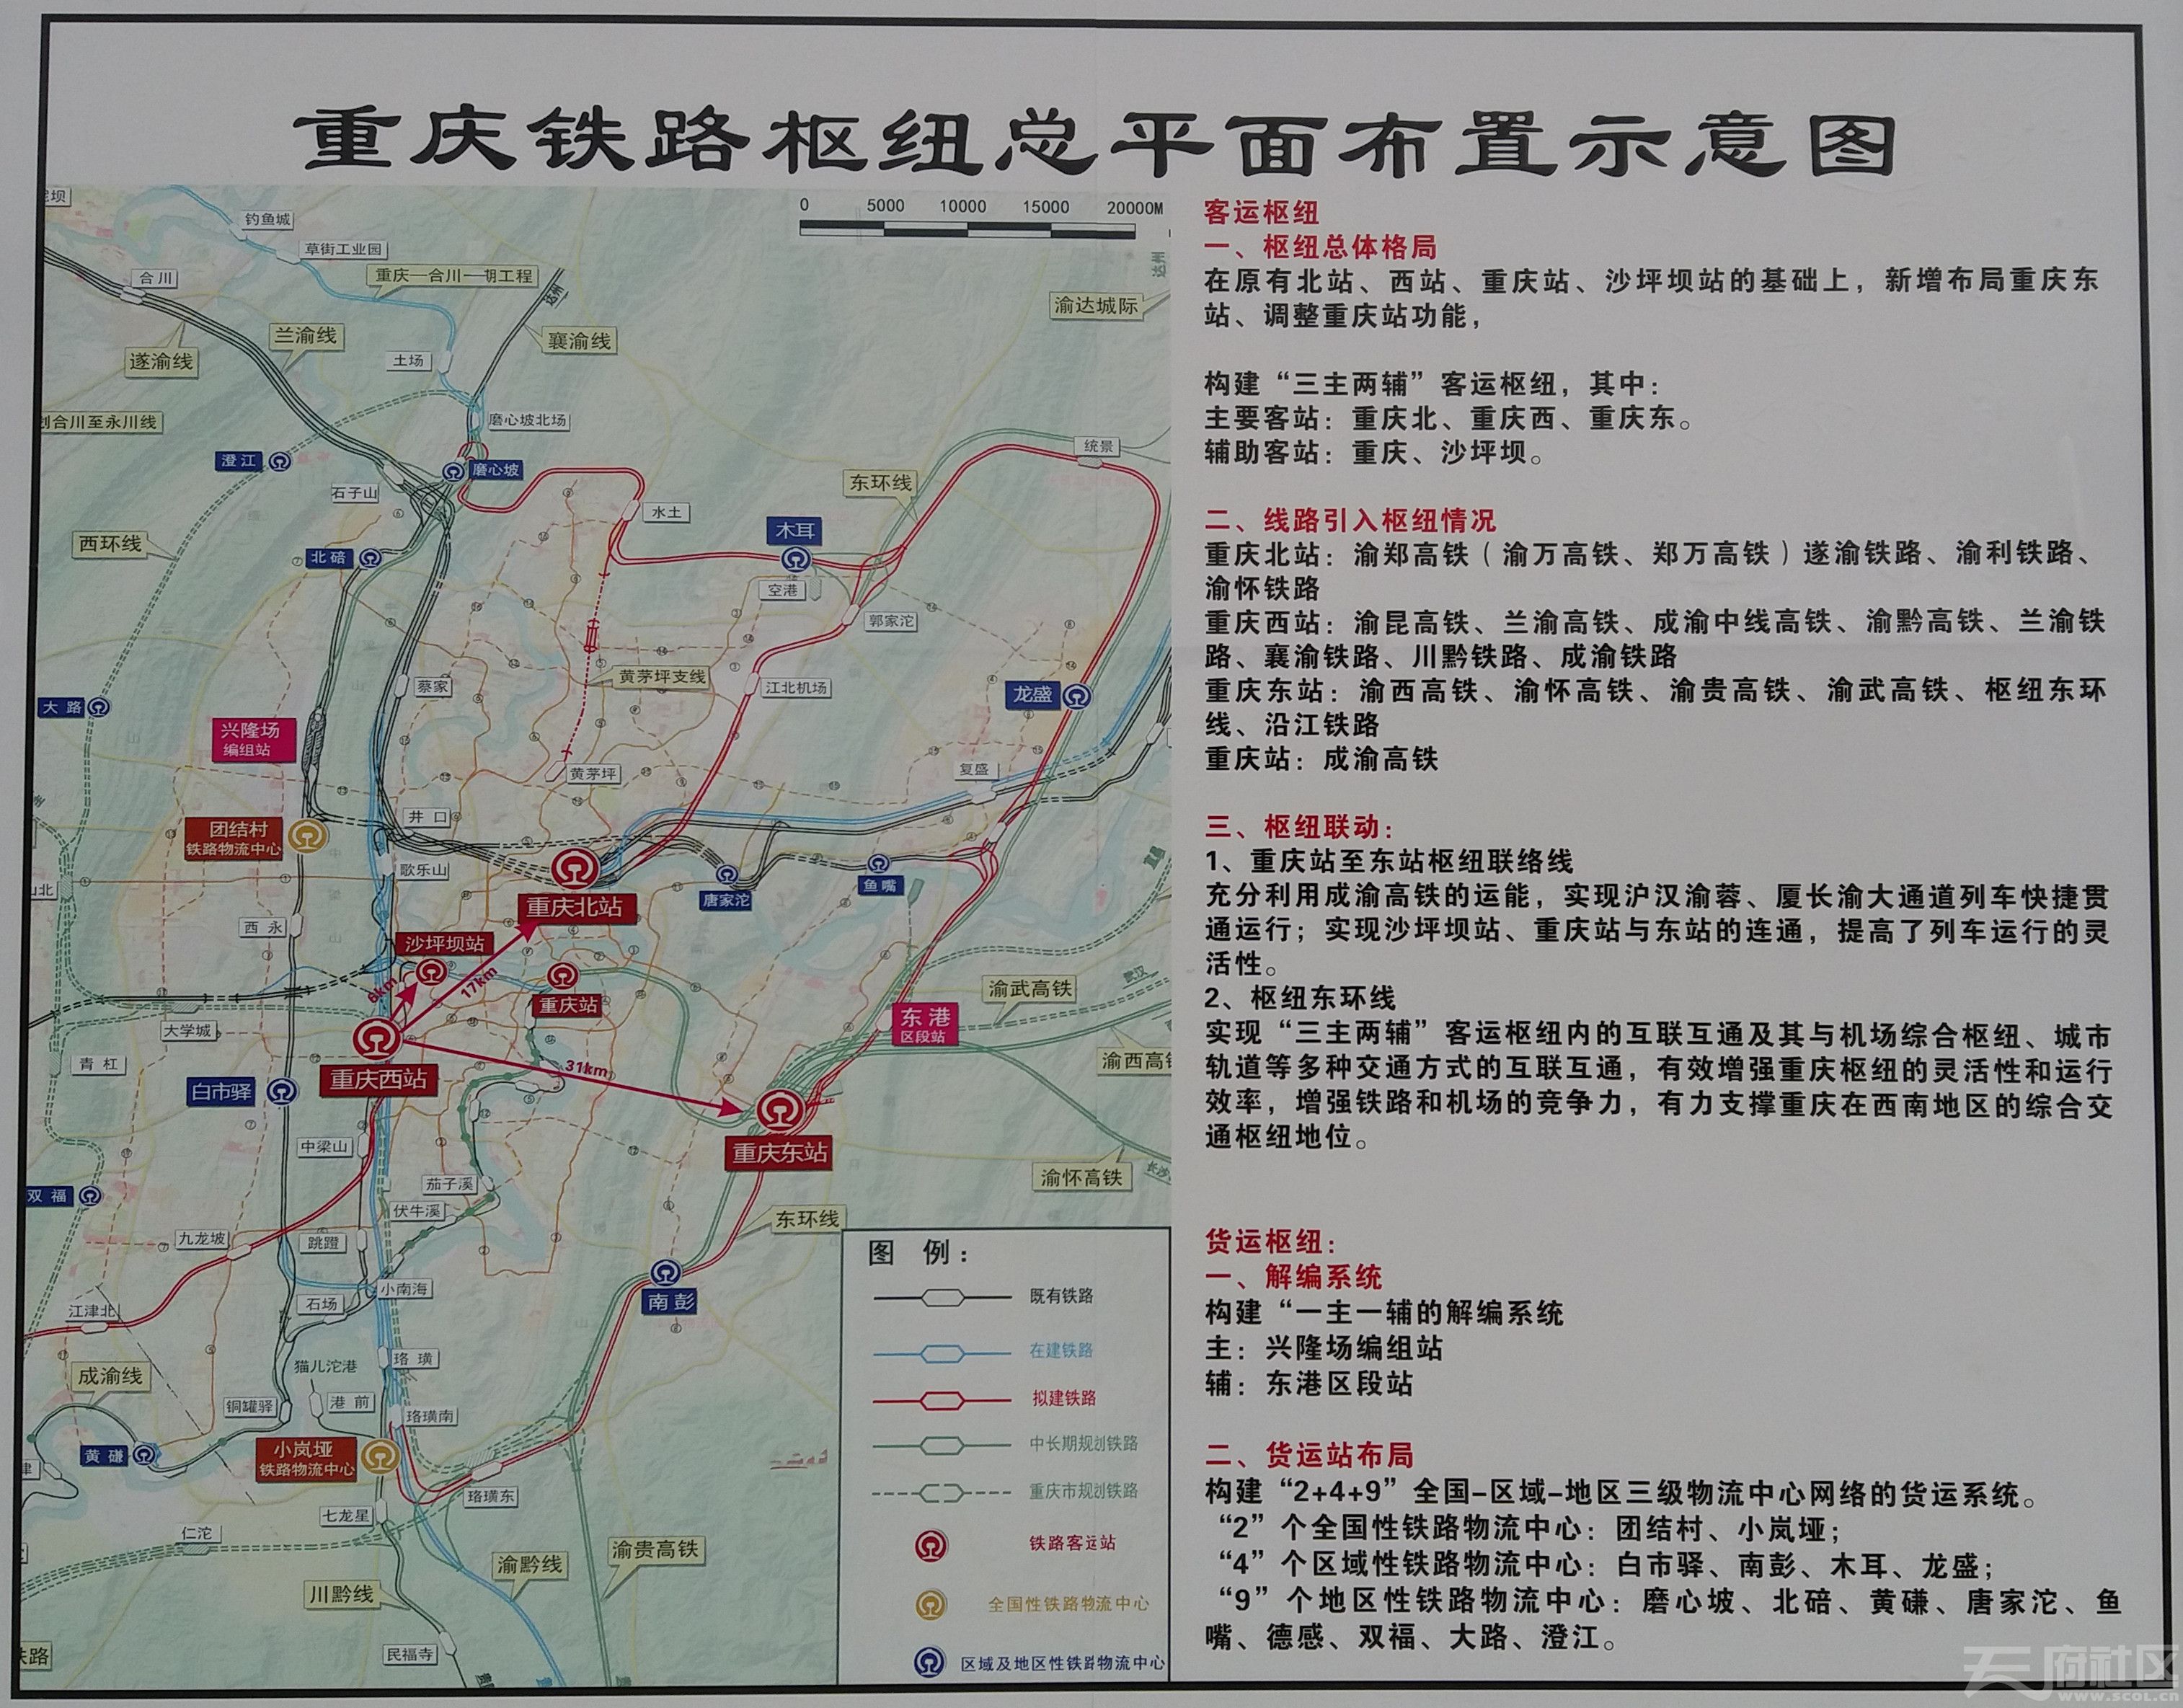 重庆铁路枢纽布局————高清大图 